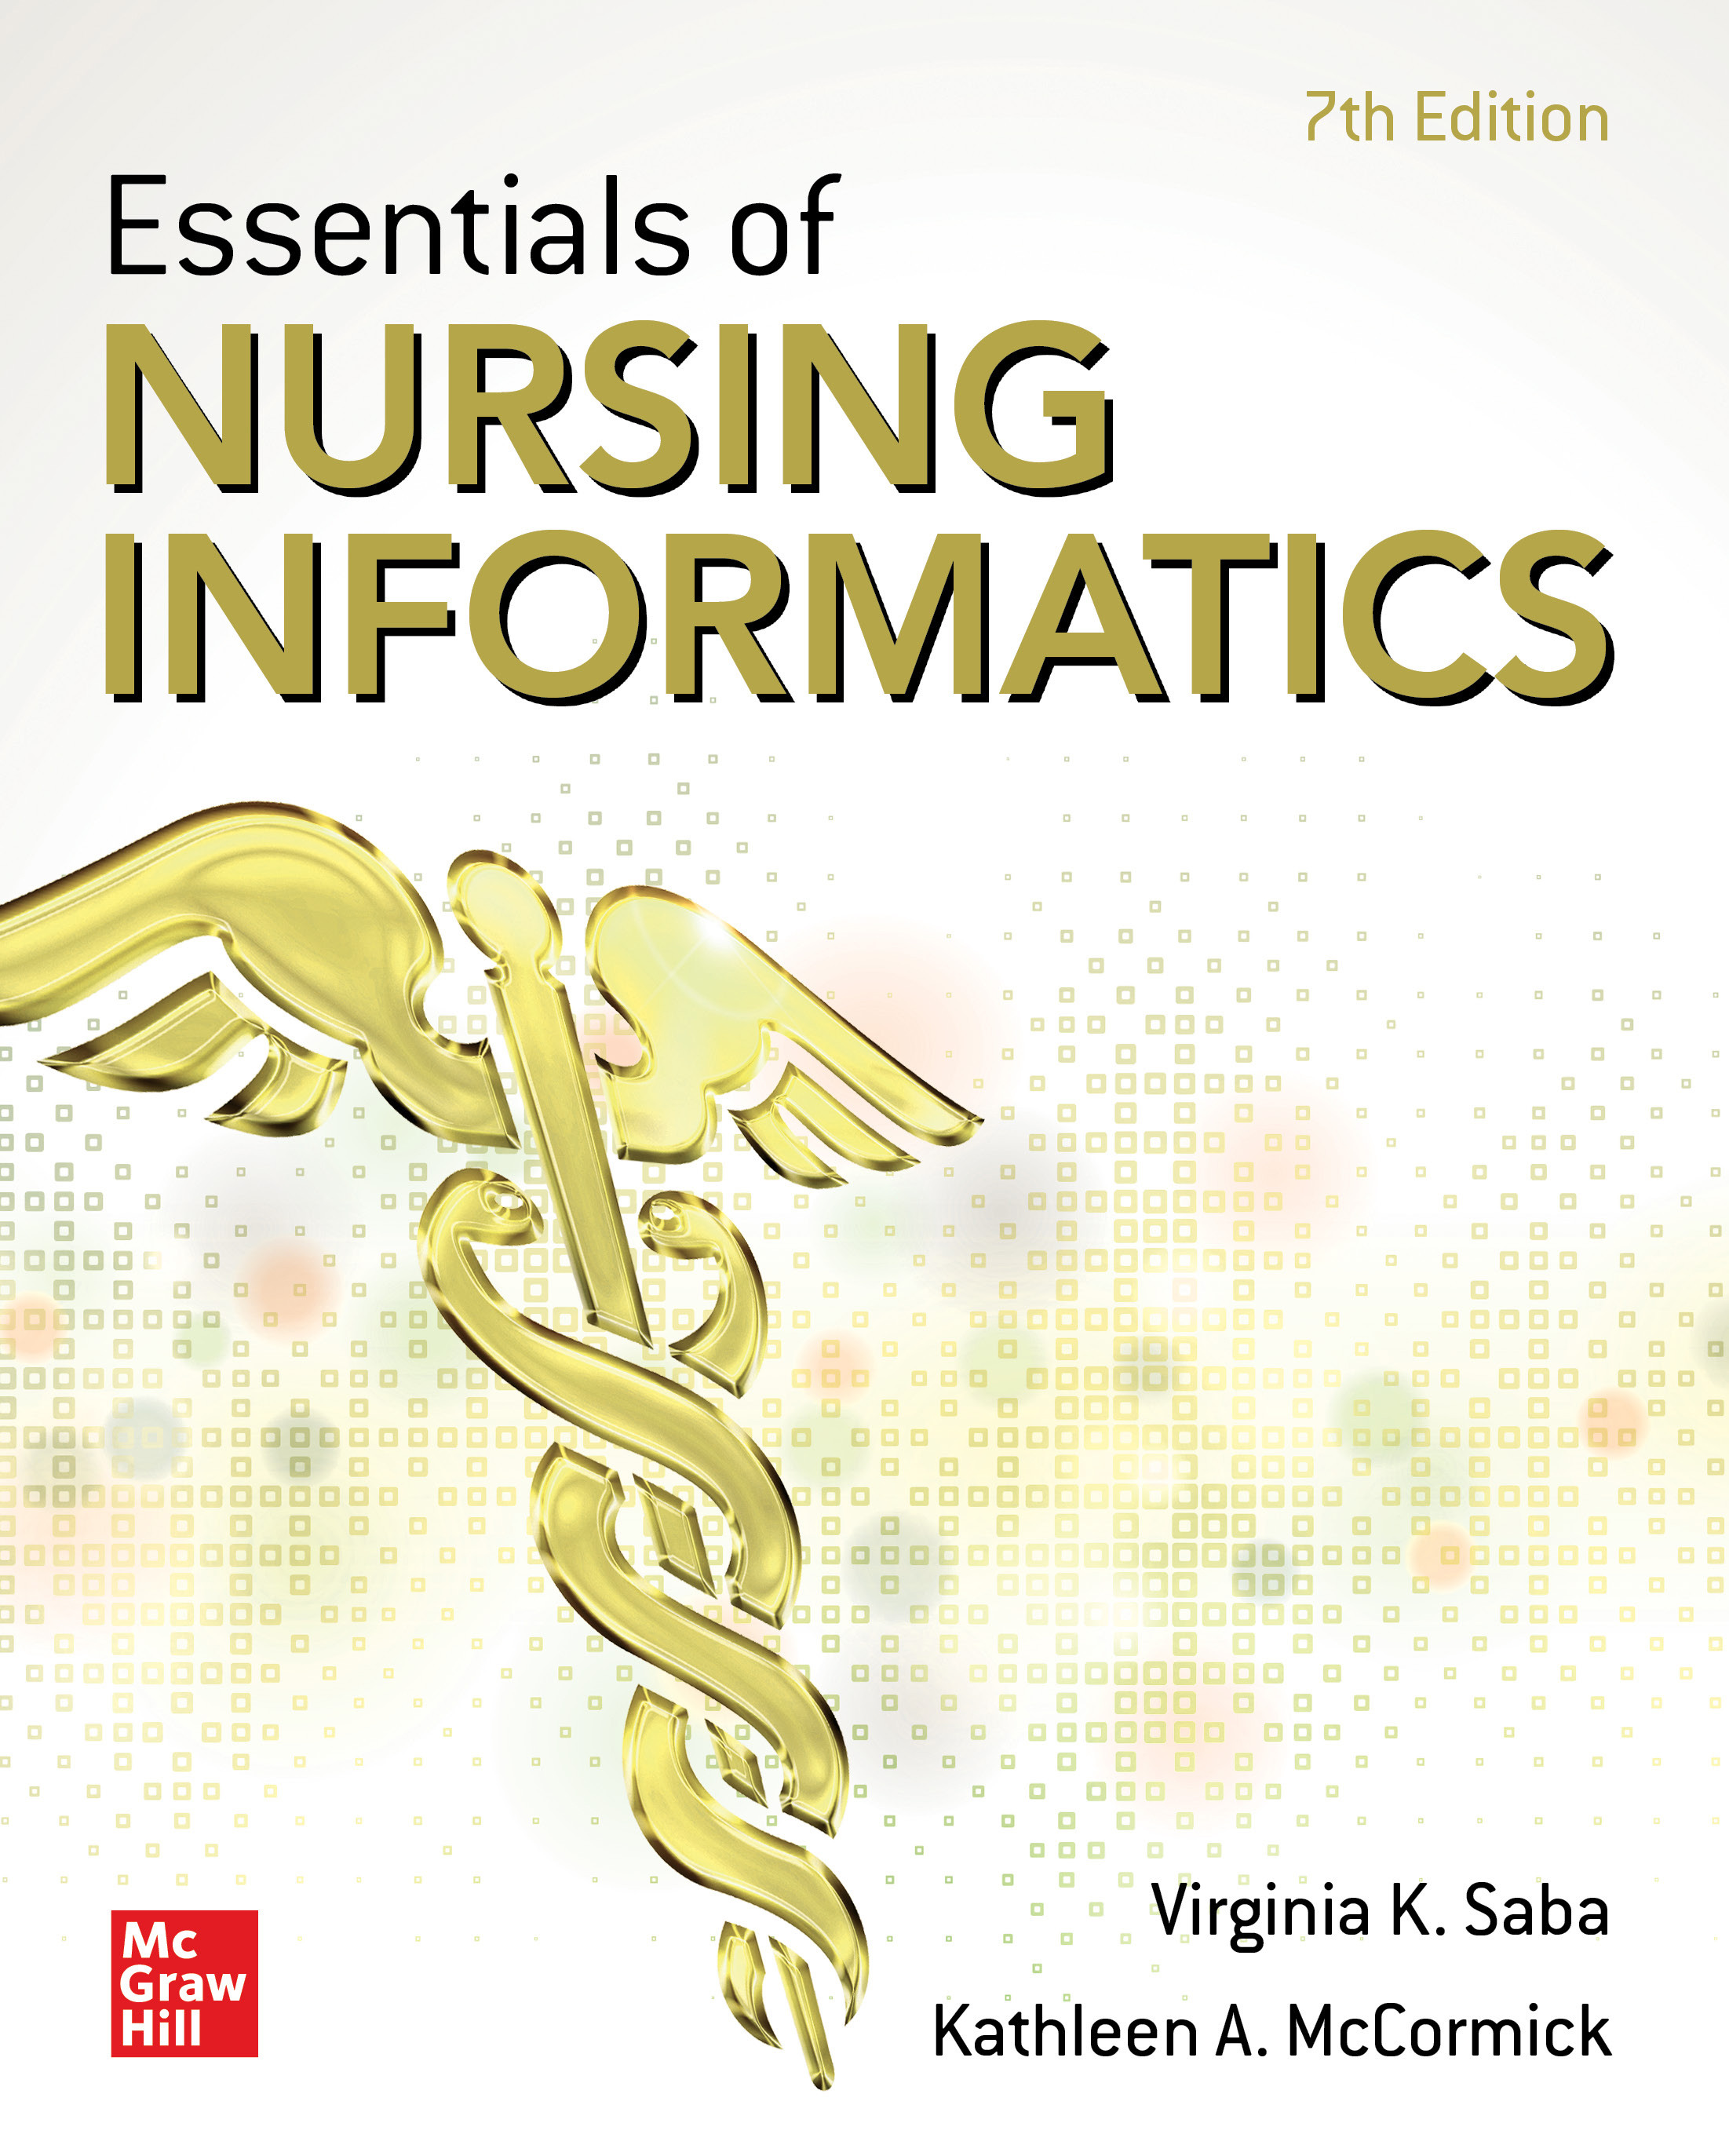 Essentials of Nursing Informatics, 7th ed.